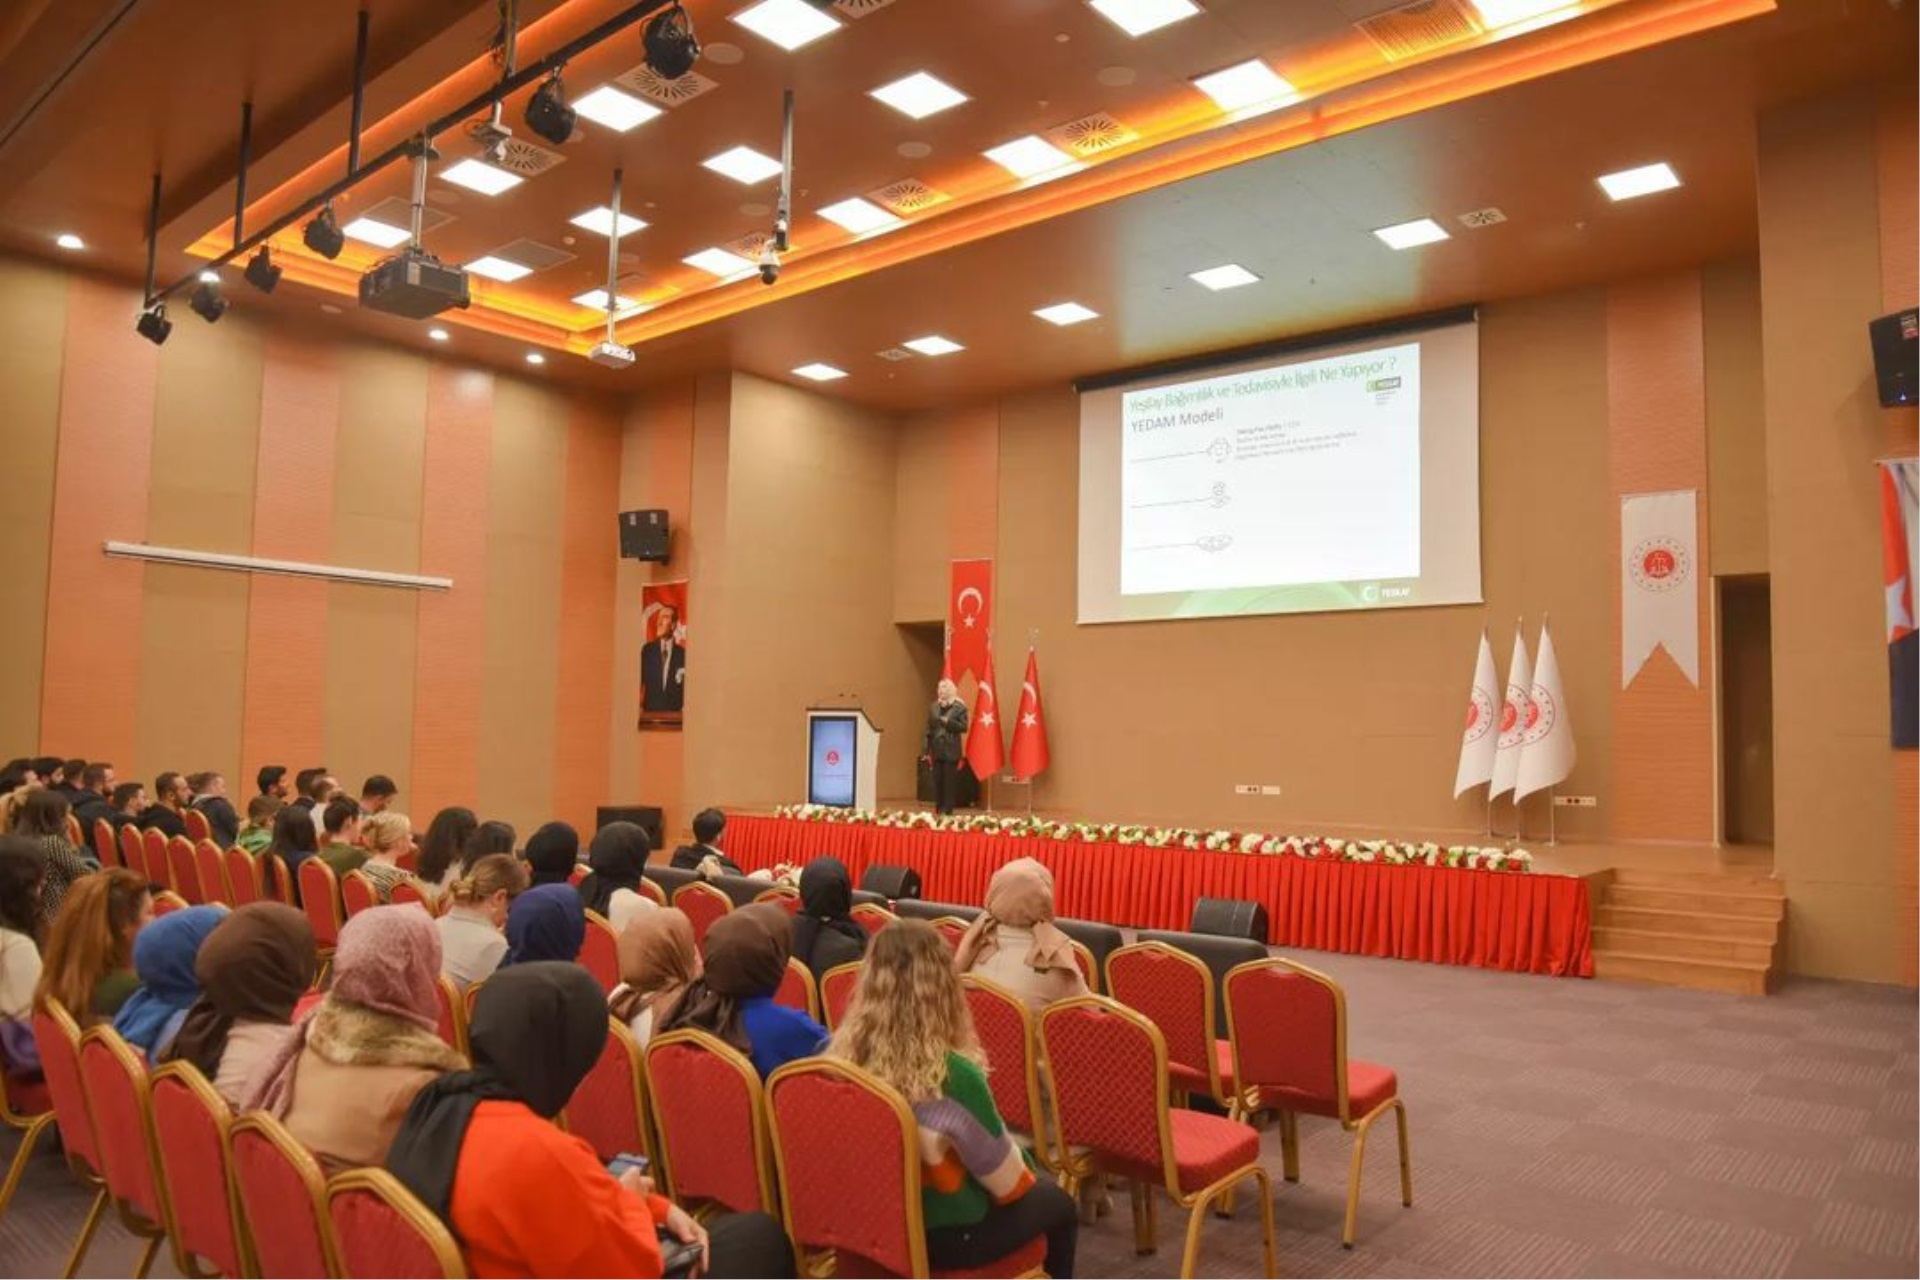 Yozgat Yeşilay Danışmanlık Merkezi uzmanlarından Klinik Psikolog Sayın Şuheda Nur TEMEL tarafından “Yeşilay Danışmanlık Merkezleri Tanıtımı ve Madde Bağımlılığı” Konulu Konferans Düzenlendi.